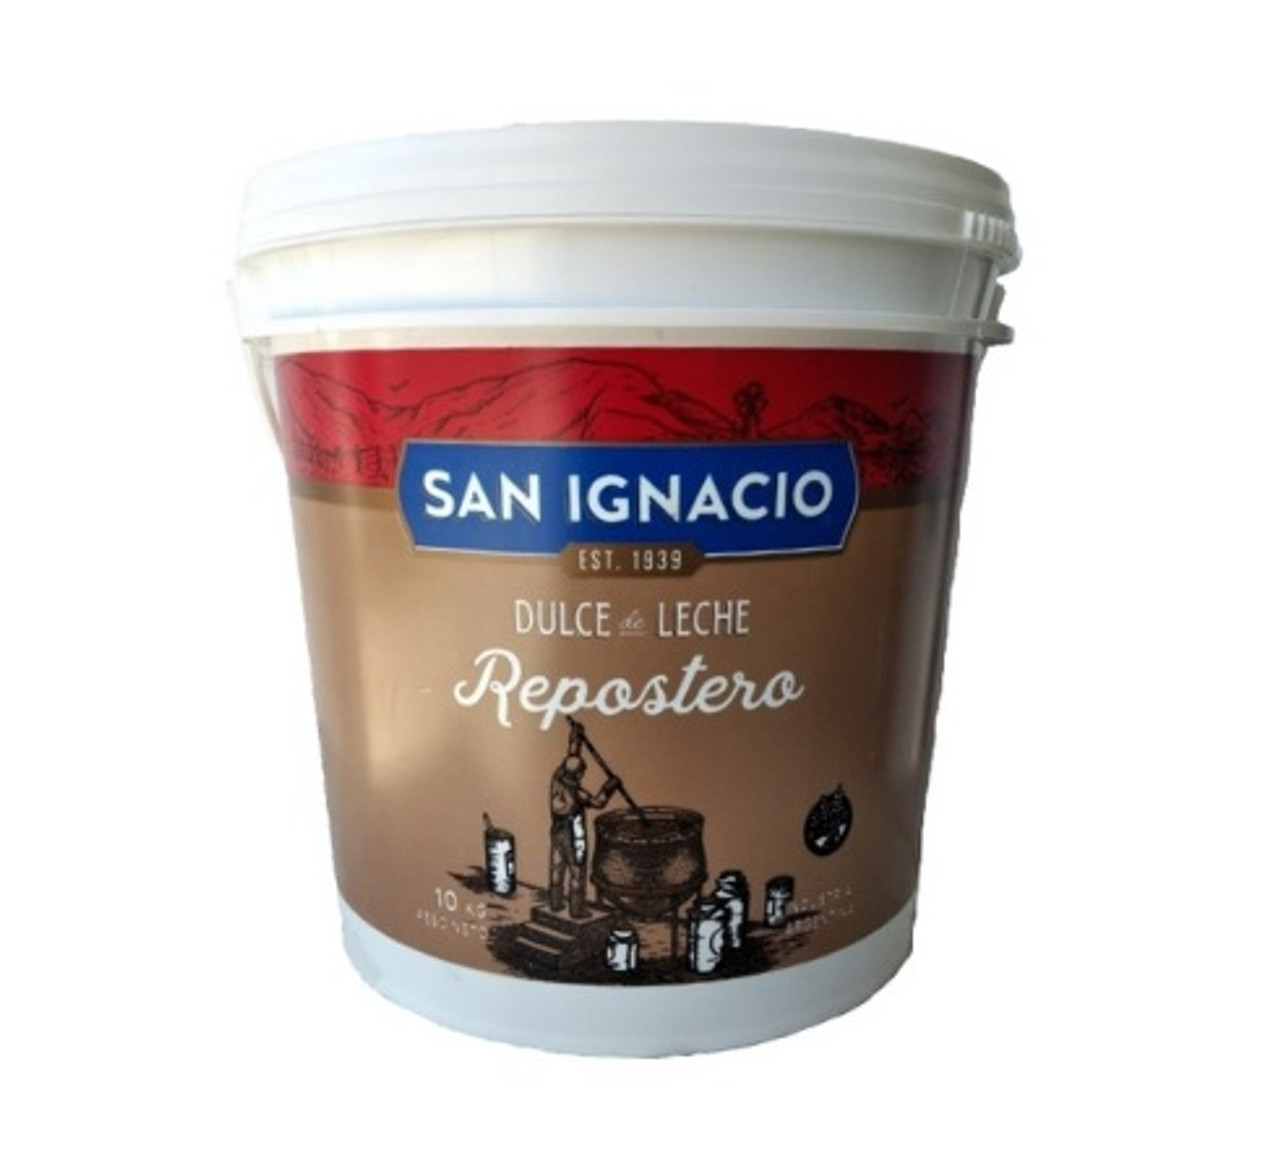 San Ignacio Dulce de Leche Repostero Thicker Reposteria, Confectioner's  Thicker Milk Confiture for Bakeries, Cakes and Pastry, 10 kg / 22 lb